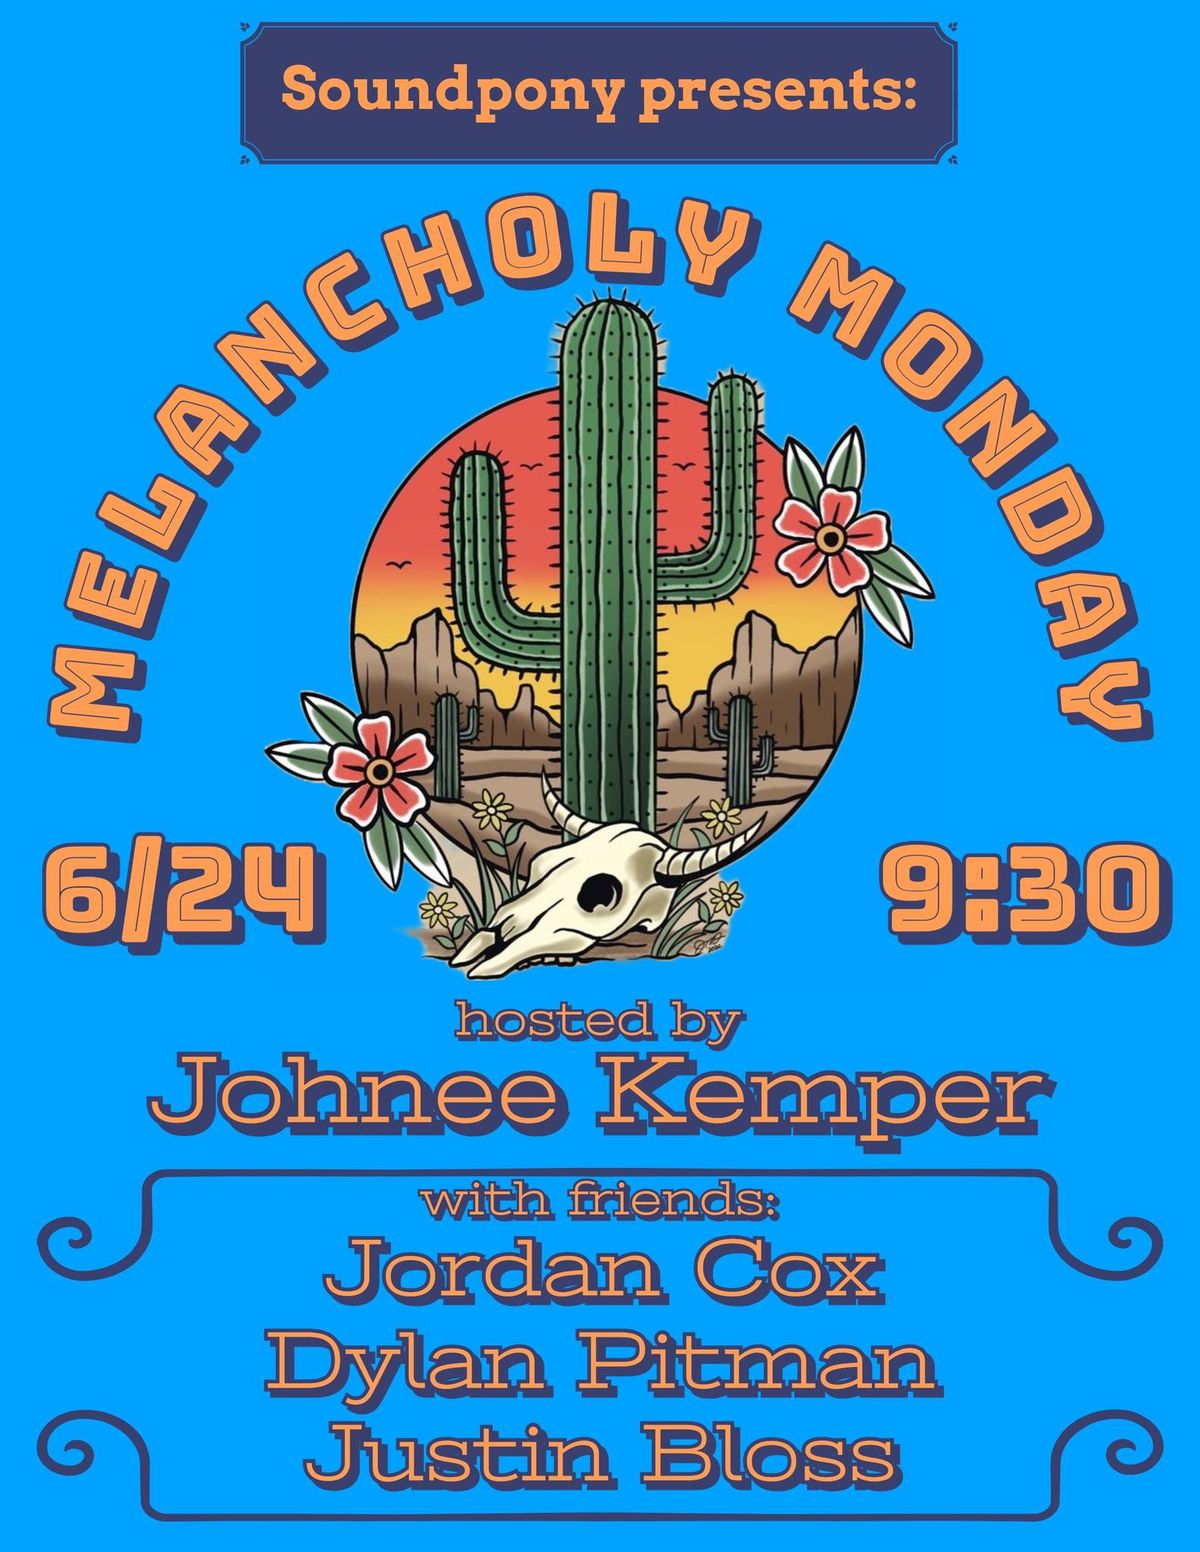 Melancholy Monday at Soundpony